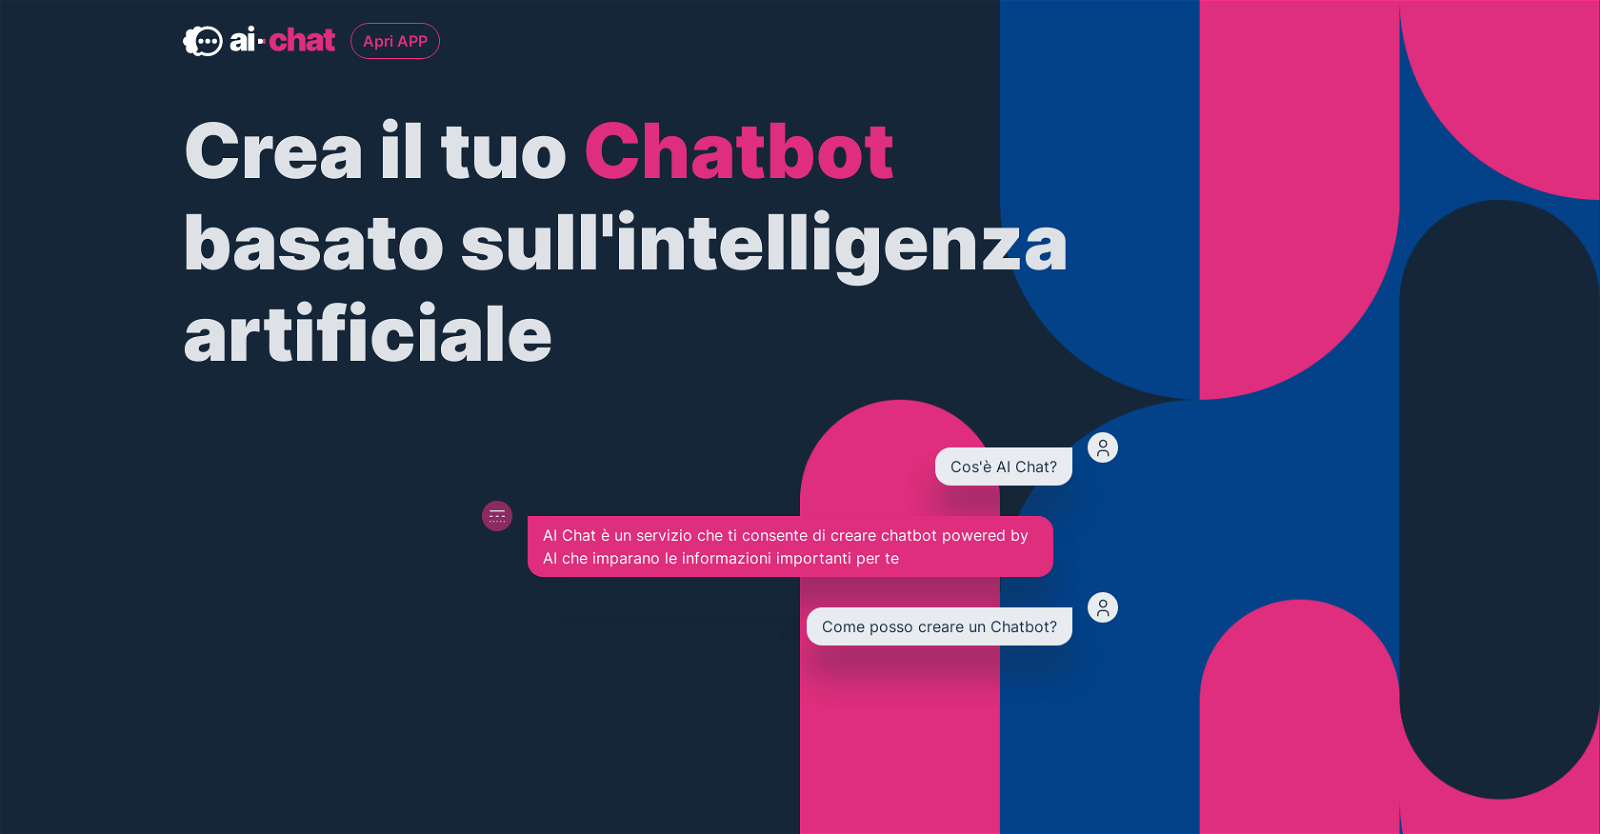 AI-Chat.it